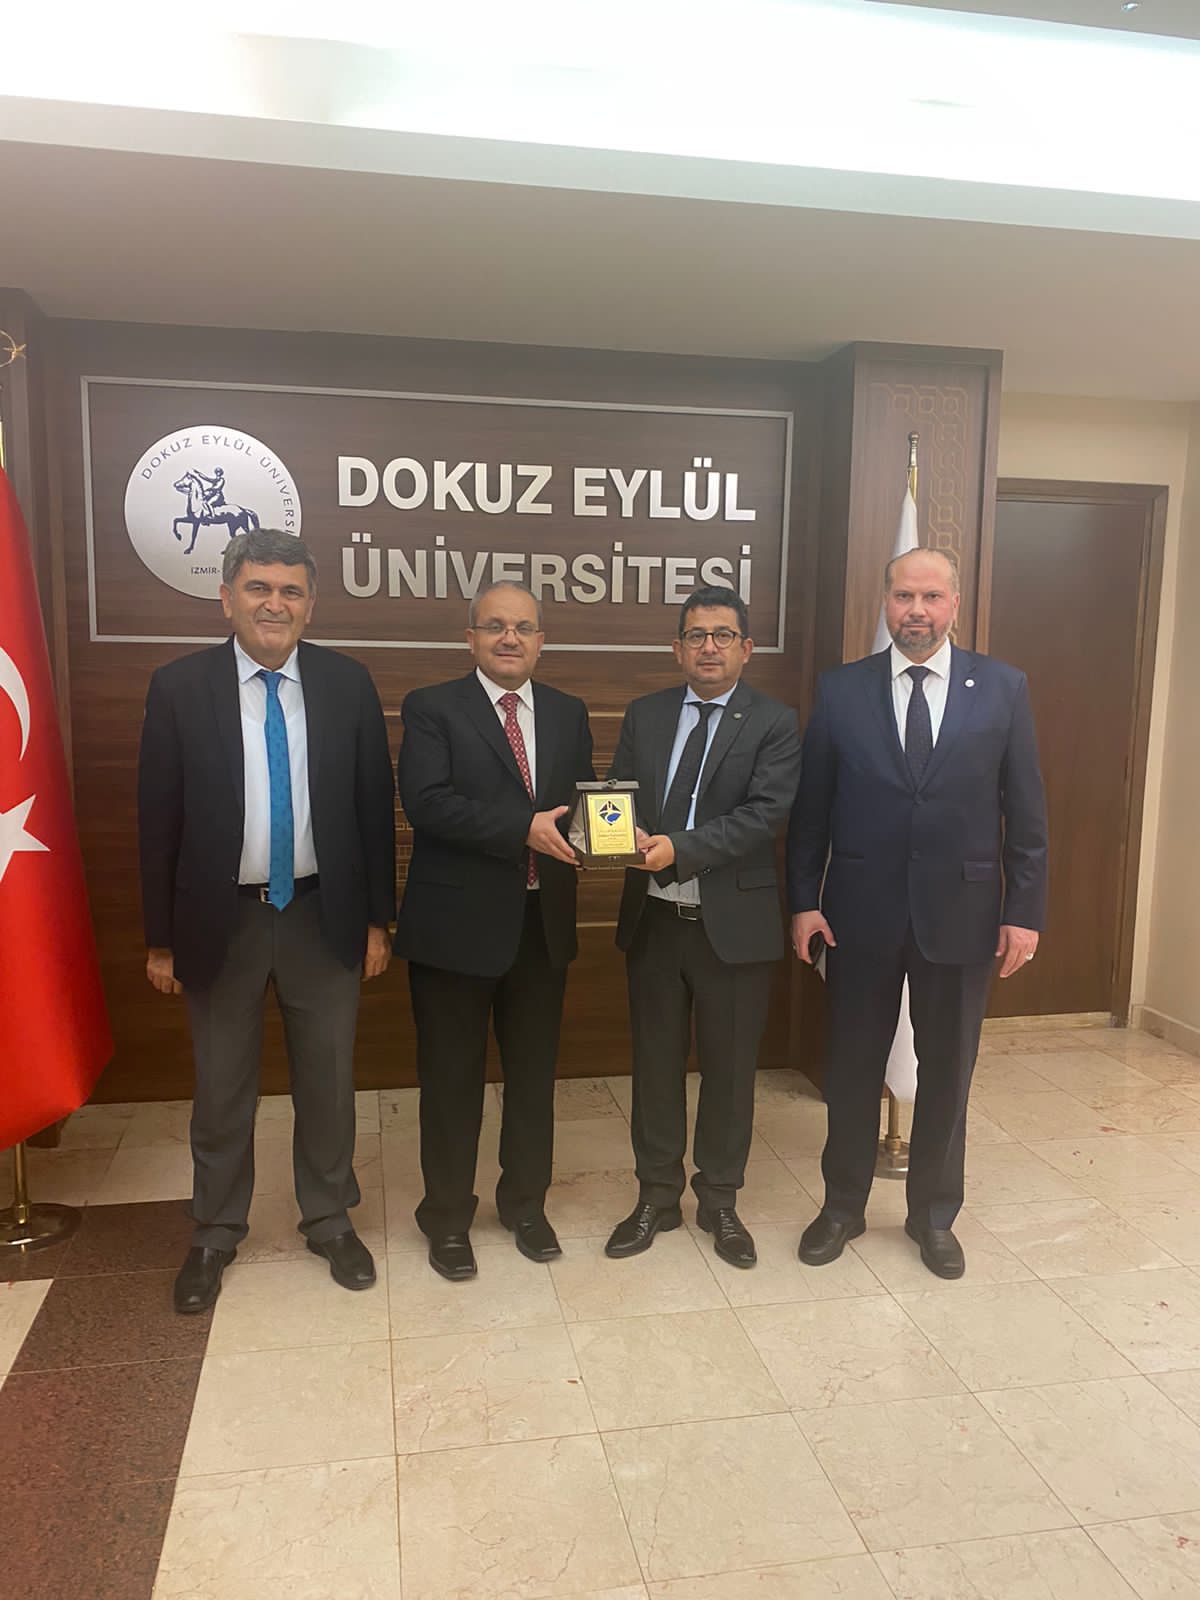 جامعة جدارا توقع مذكرة تفاهم مع جامعة دوكوز ايلول في إزمير التركية